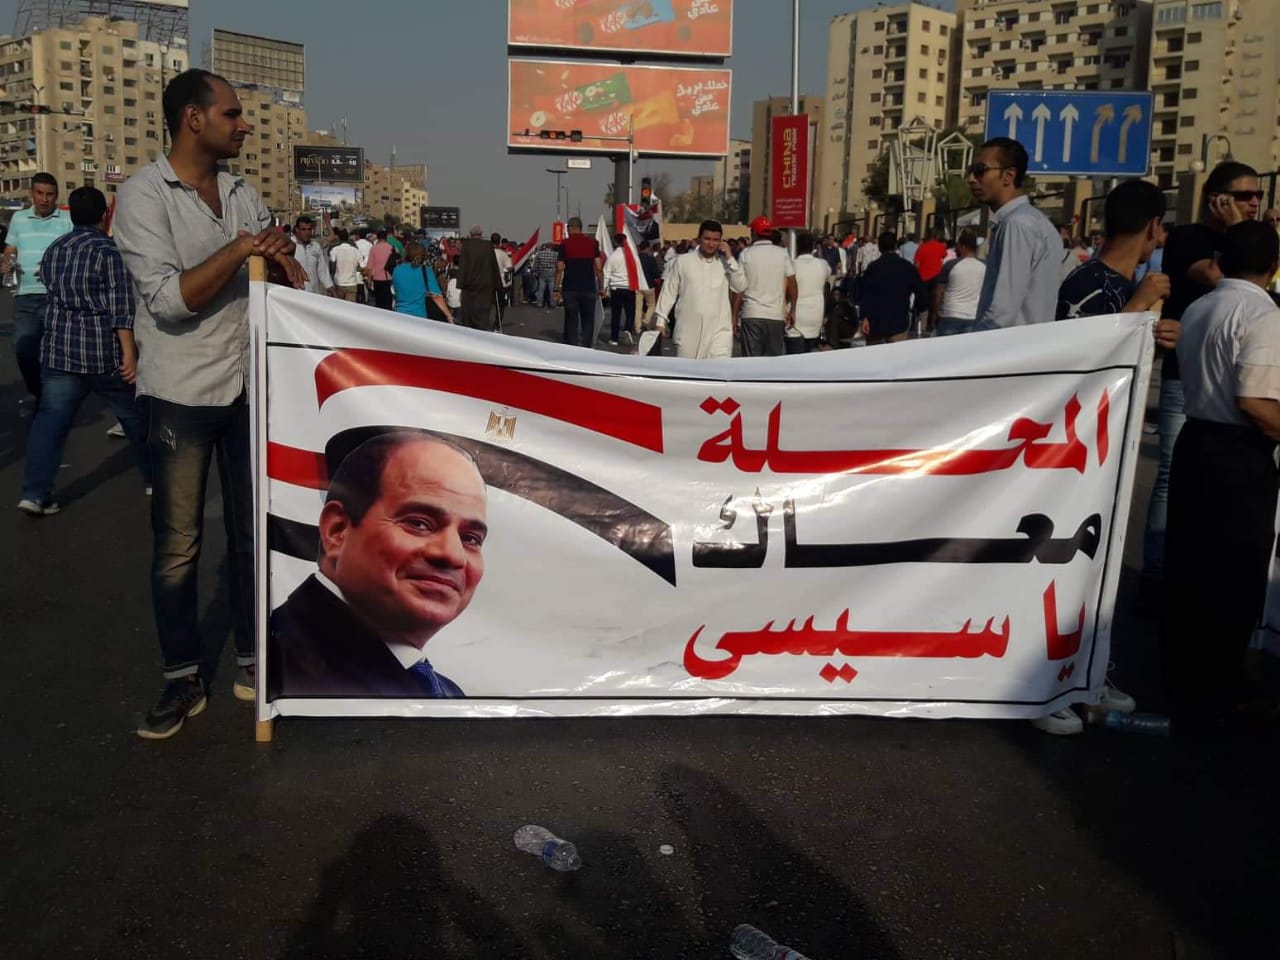   صور|| مظاهرات المصريين لتأييد بلدهم ورئيسهم فى محافظات مصر المختلفة